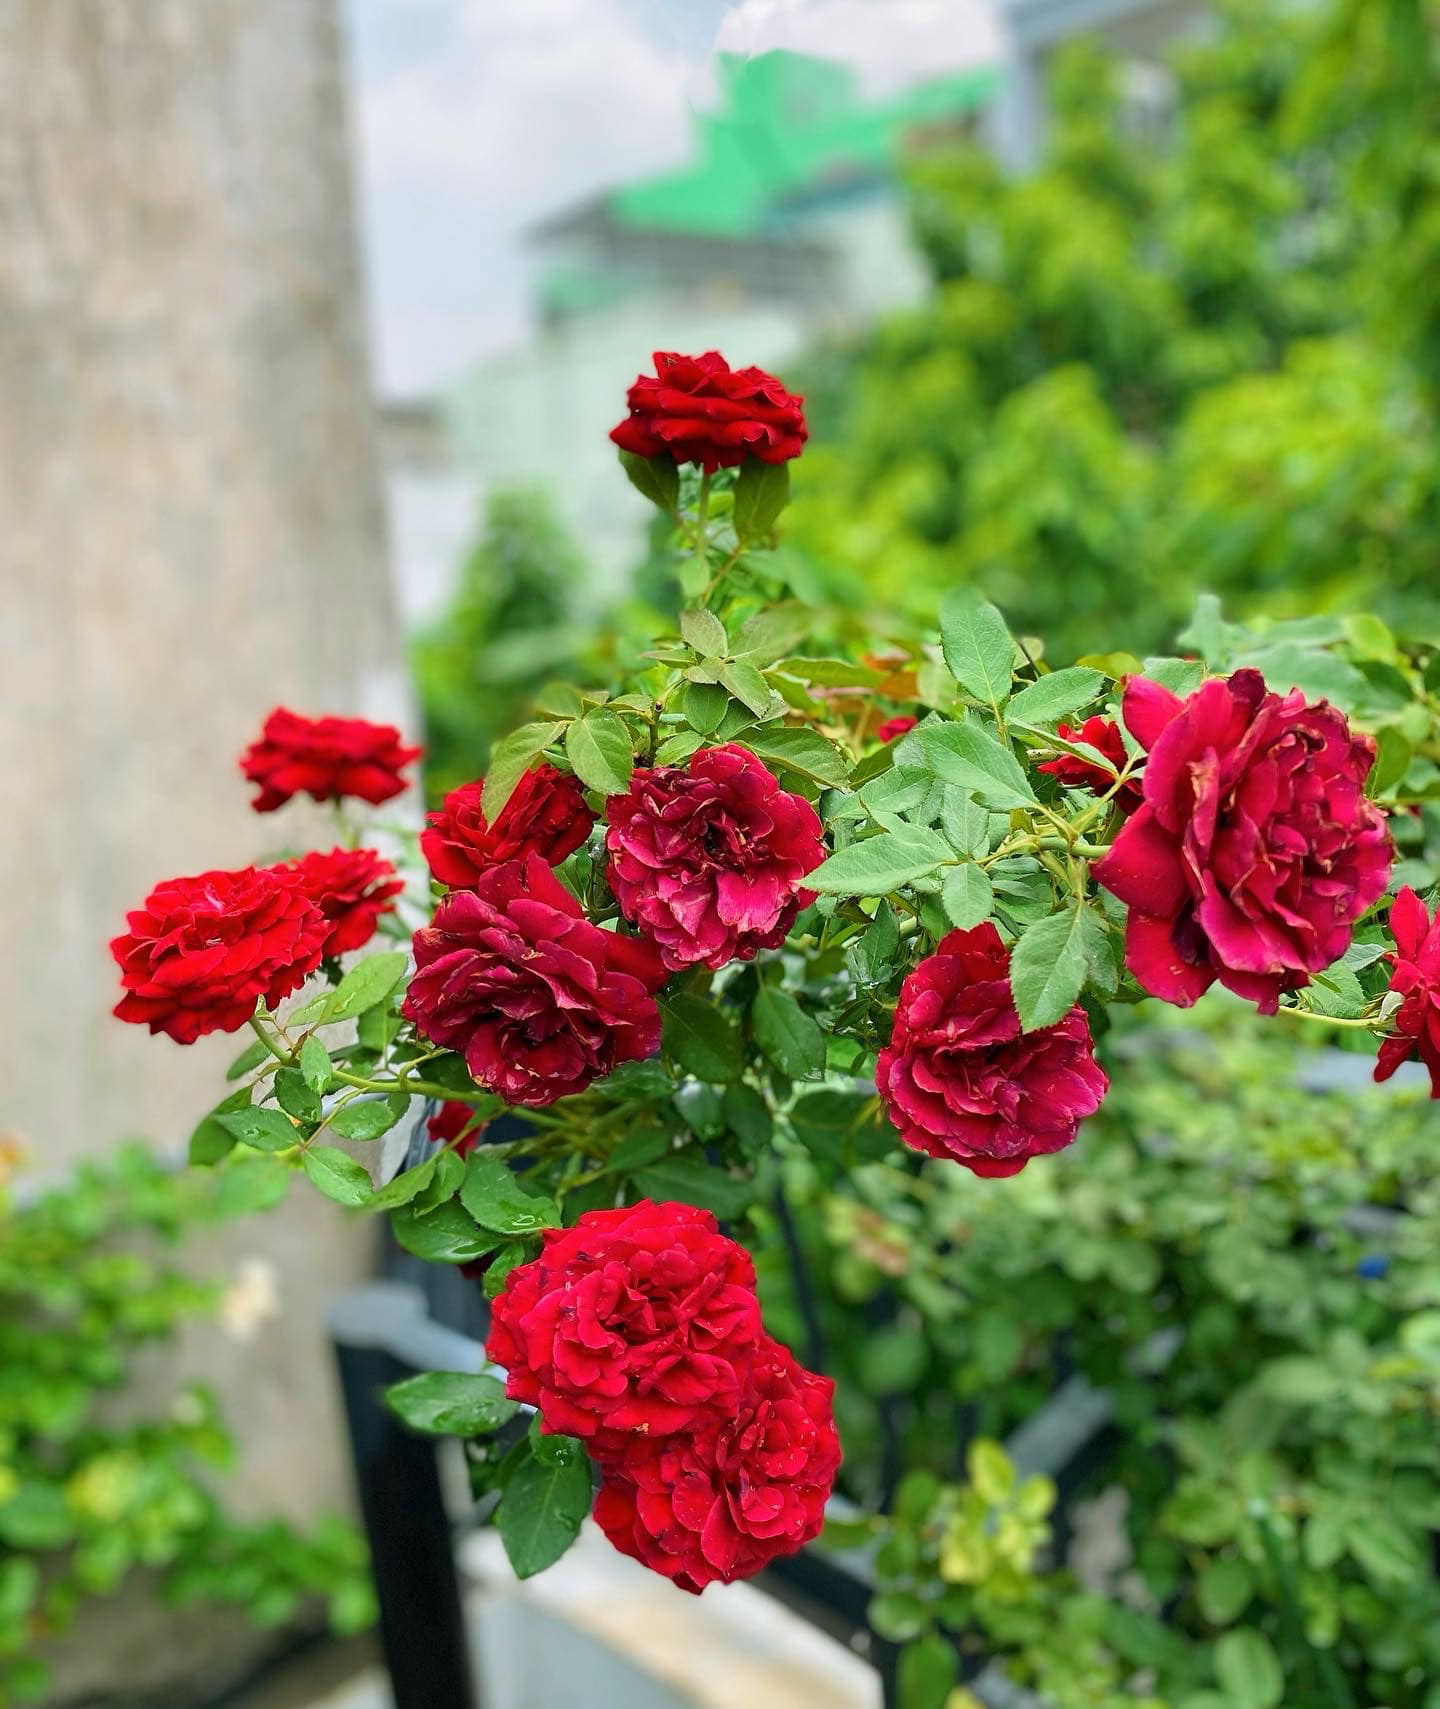 Vườn hoa hồng ngoại đẹp ngây ngất trên sân thượng giữa Sài thành của trai đẹp Sài Gòn - Ảnh 13.